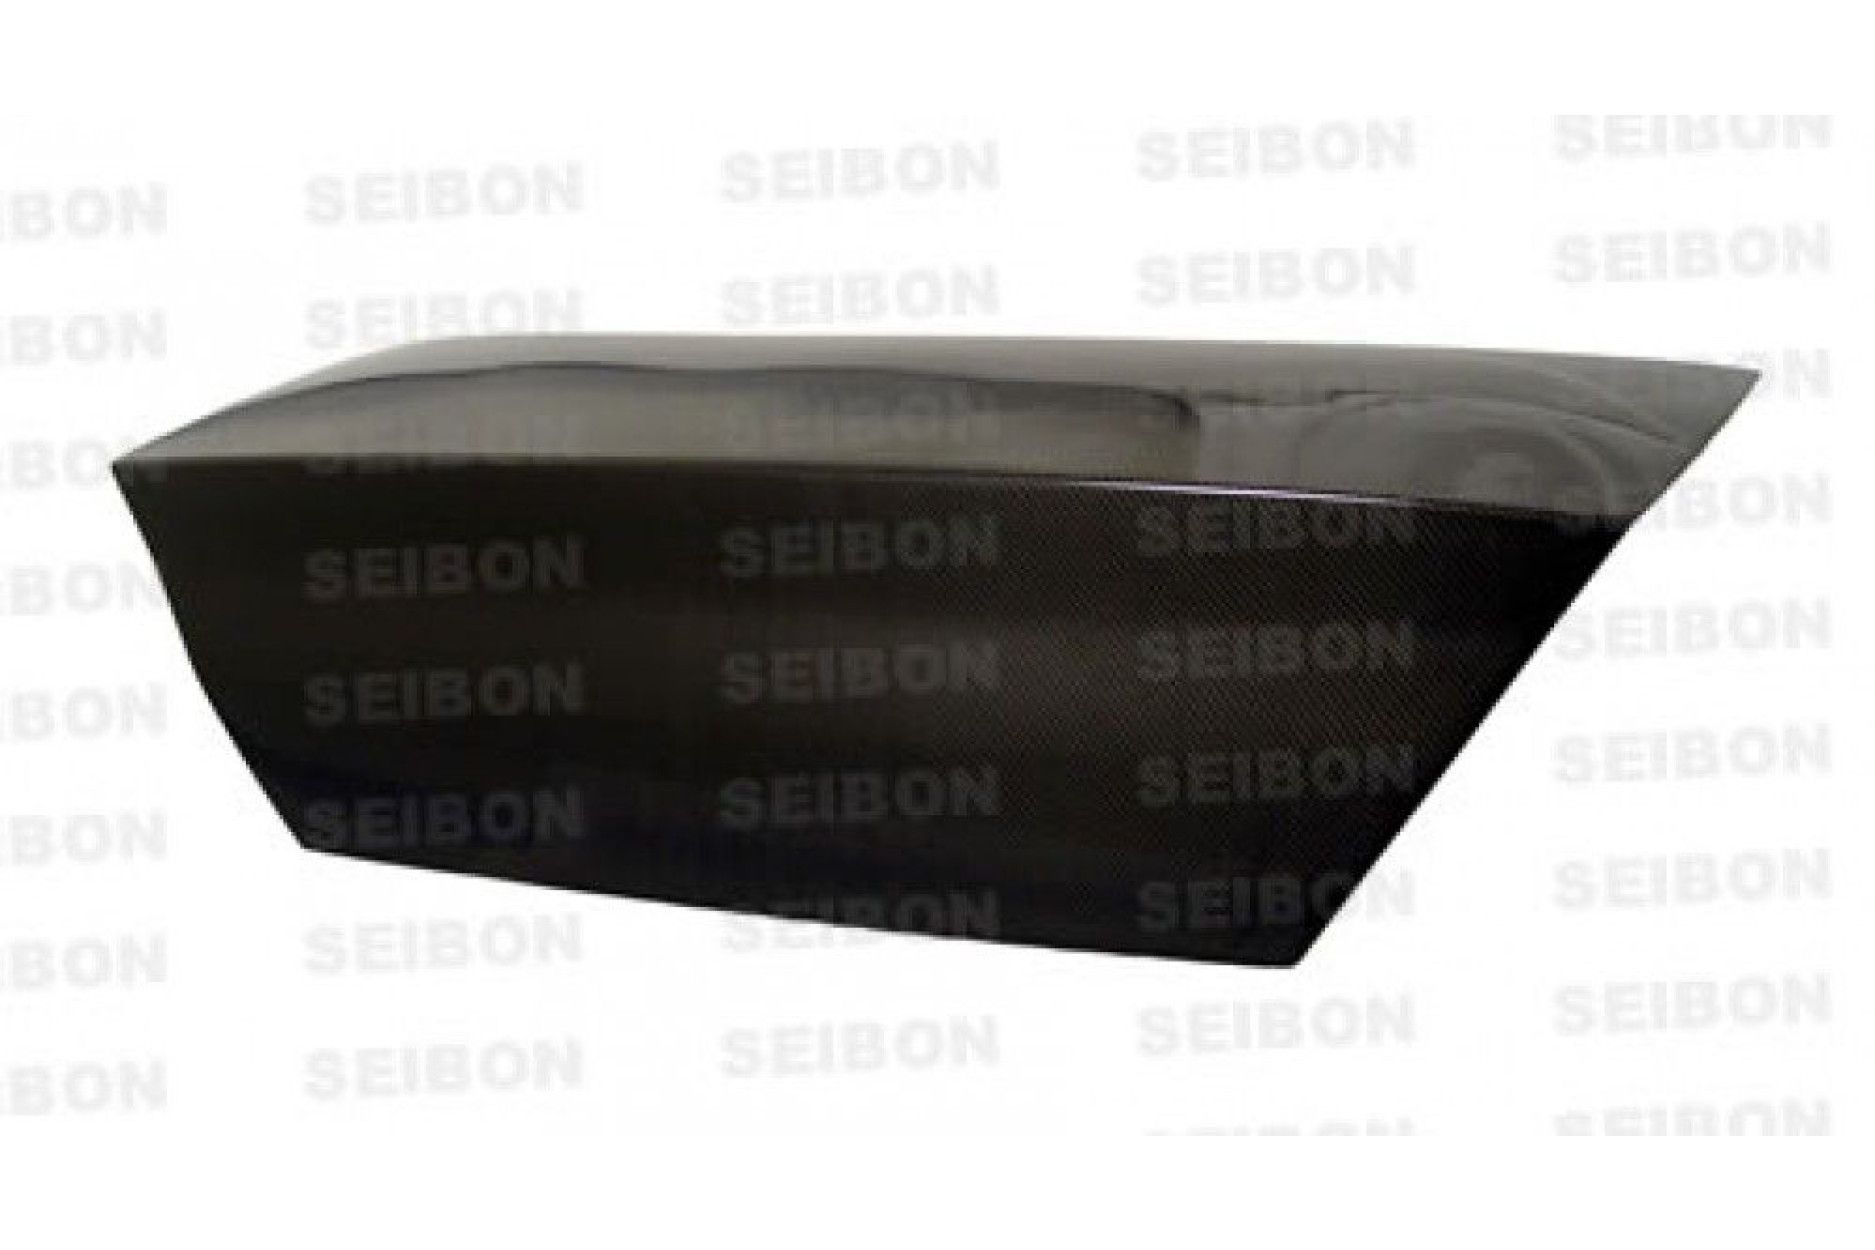 Seibon carbon TRUNK for MITSUBISHI LANCER EVO VIII / IX 2003 - 2007 OE-style (2) 